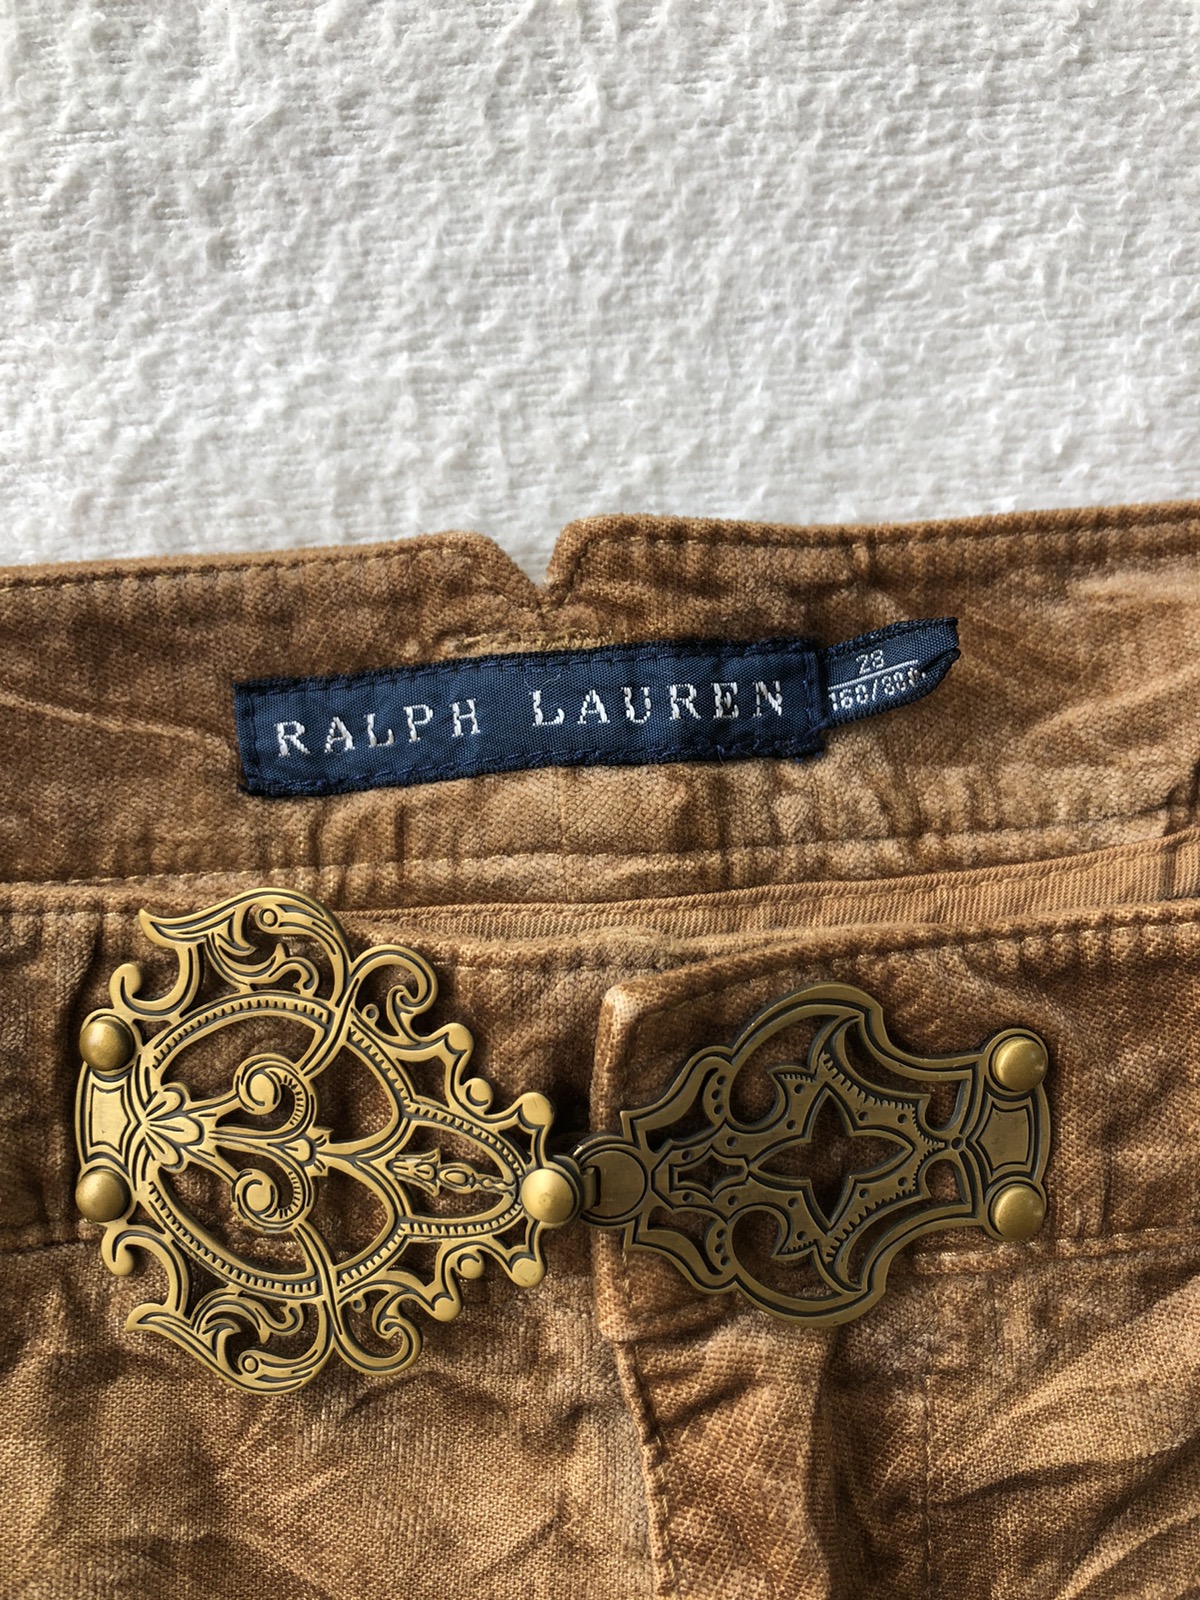 Ralph Lauren buckle pants - 6